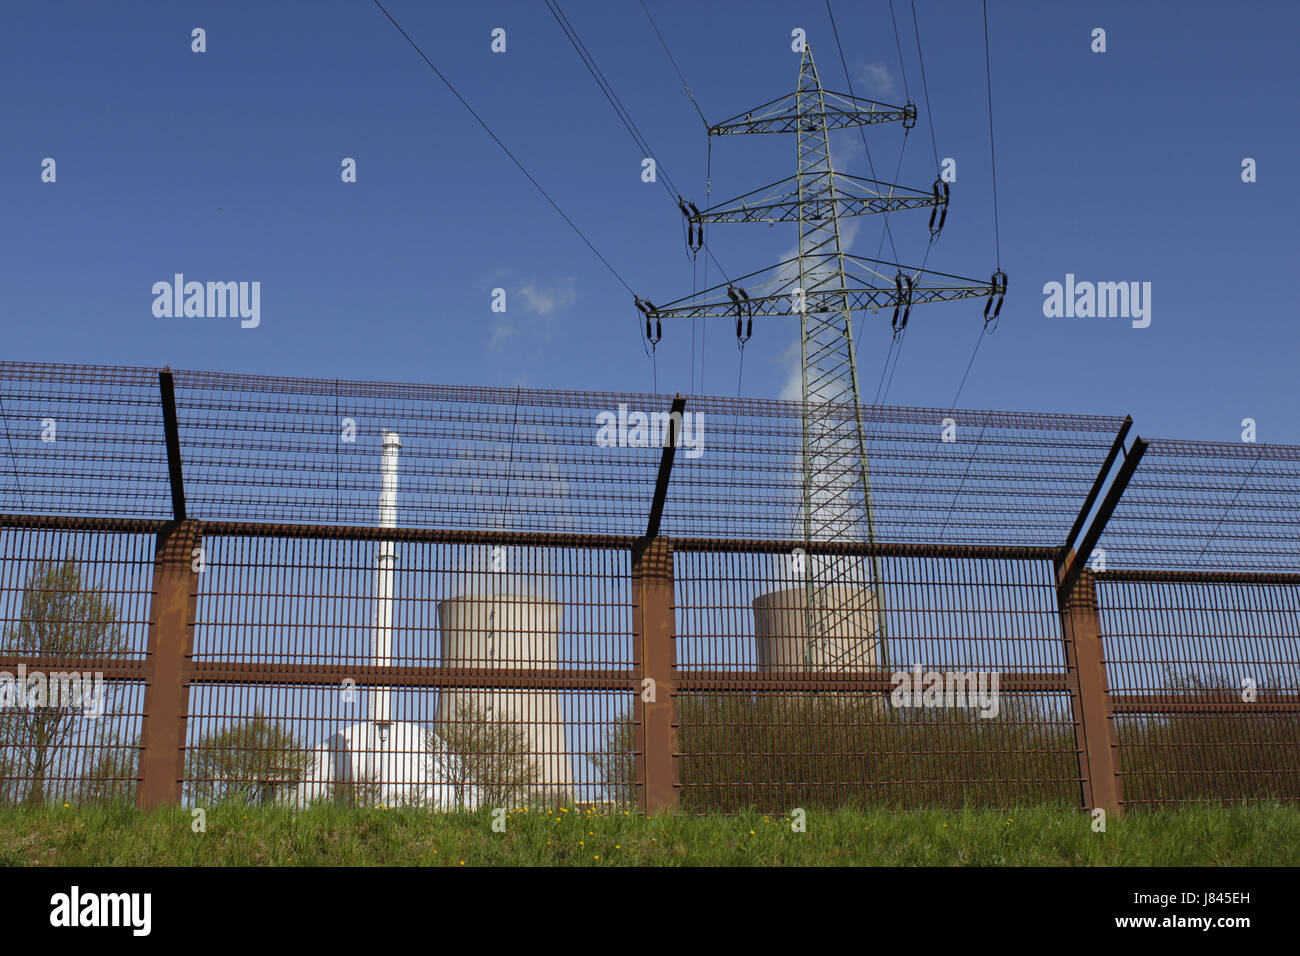 La stazione di potenza recinzione recinzione nella scherma centrale nucleare energia atomica Foto Stock